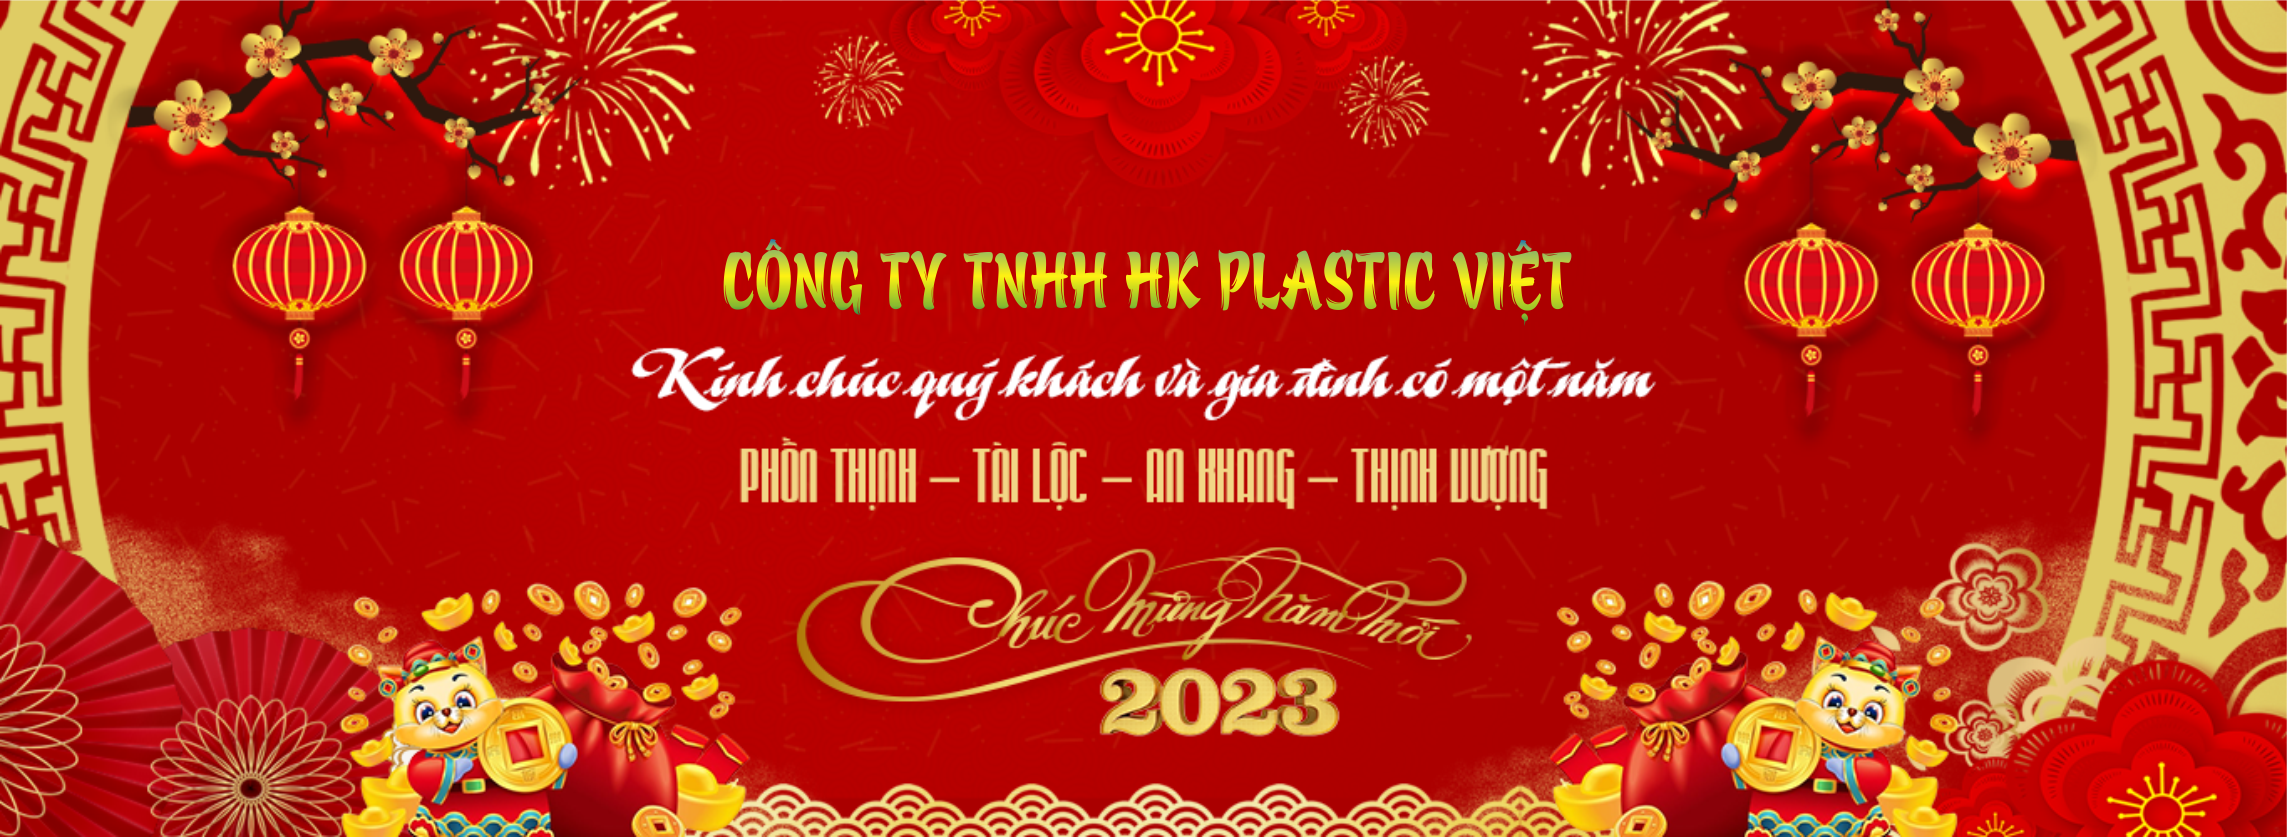 HK Plastic Viet Chúc mừng năm mới 2023